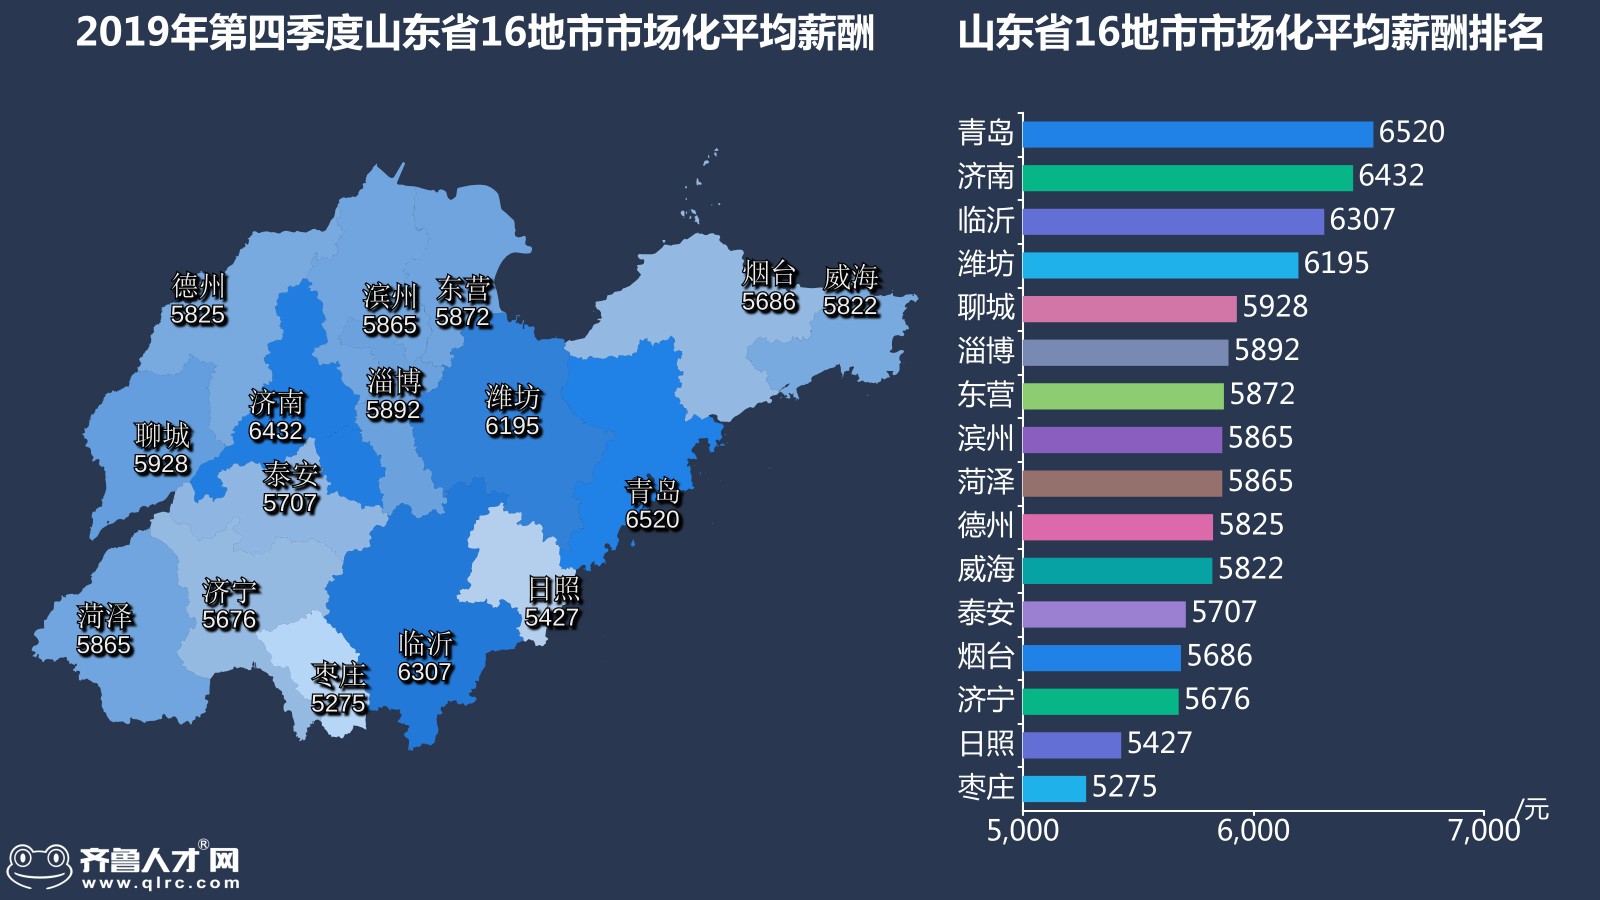 齊魯人才網-2019年山東四季度薪酬數據圖4.jpg